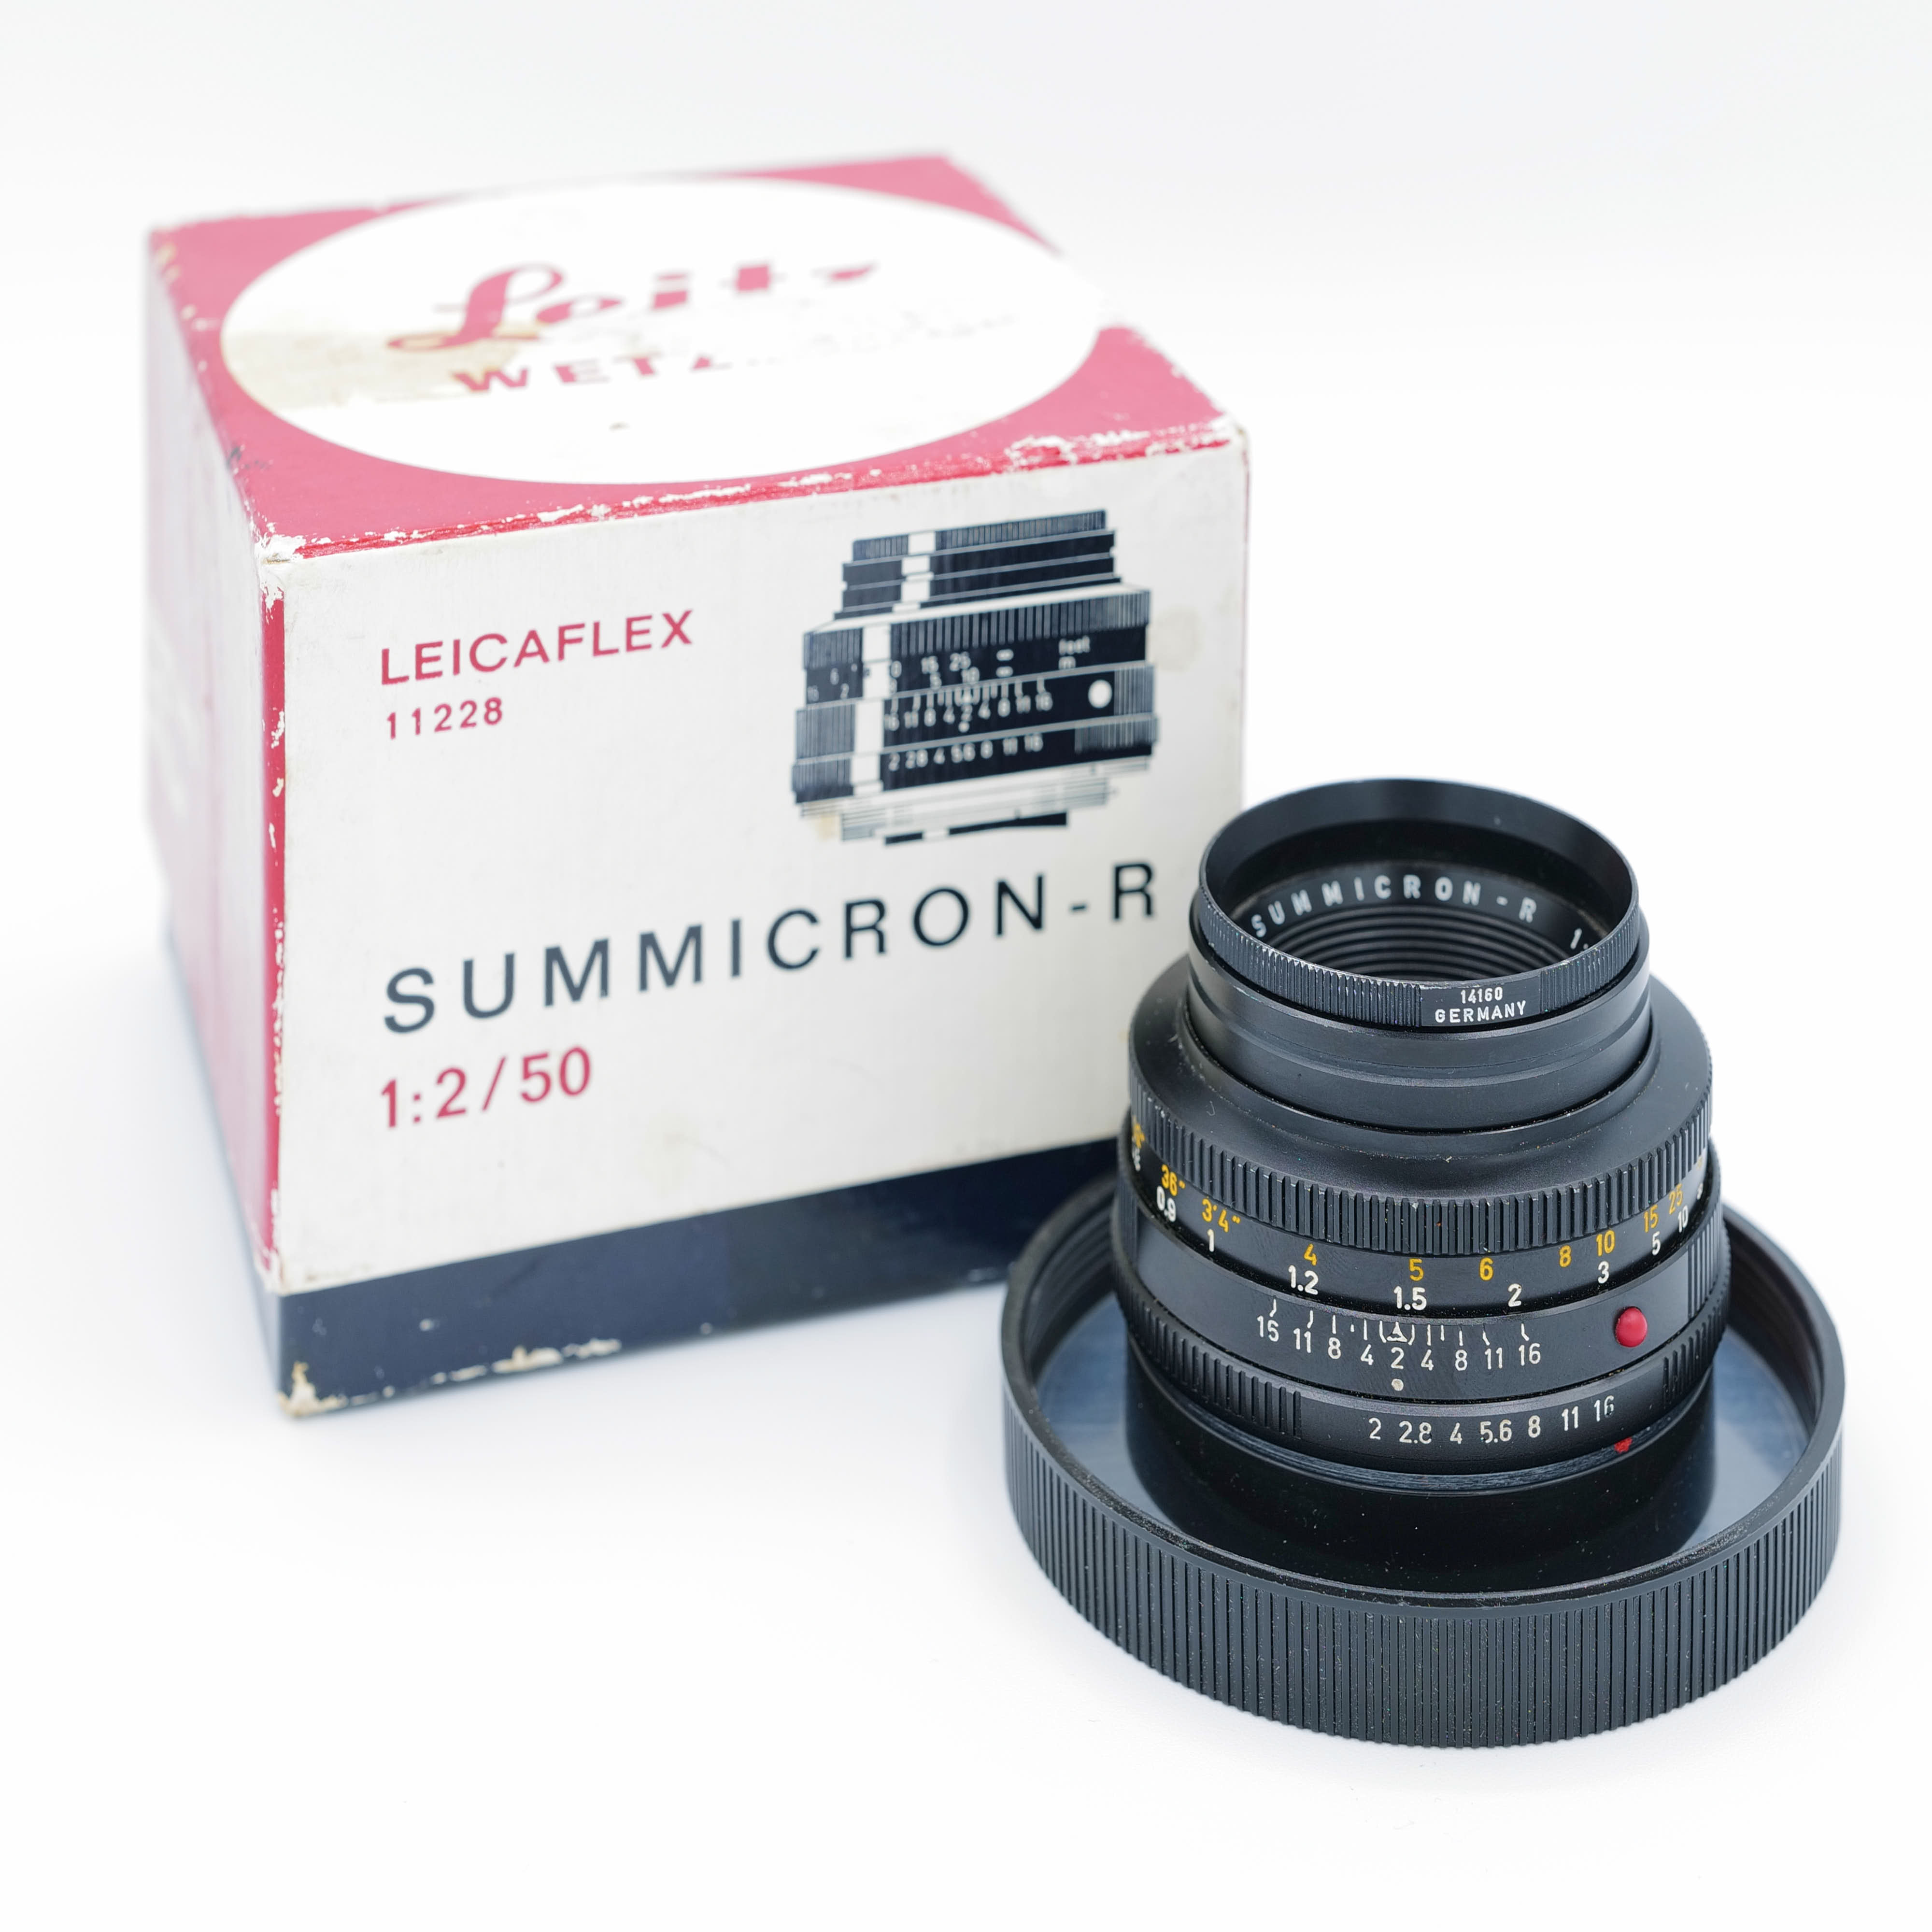 Leica Summicron-R f/2 50mm